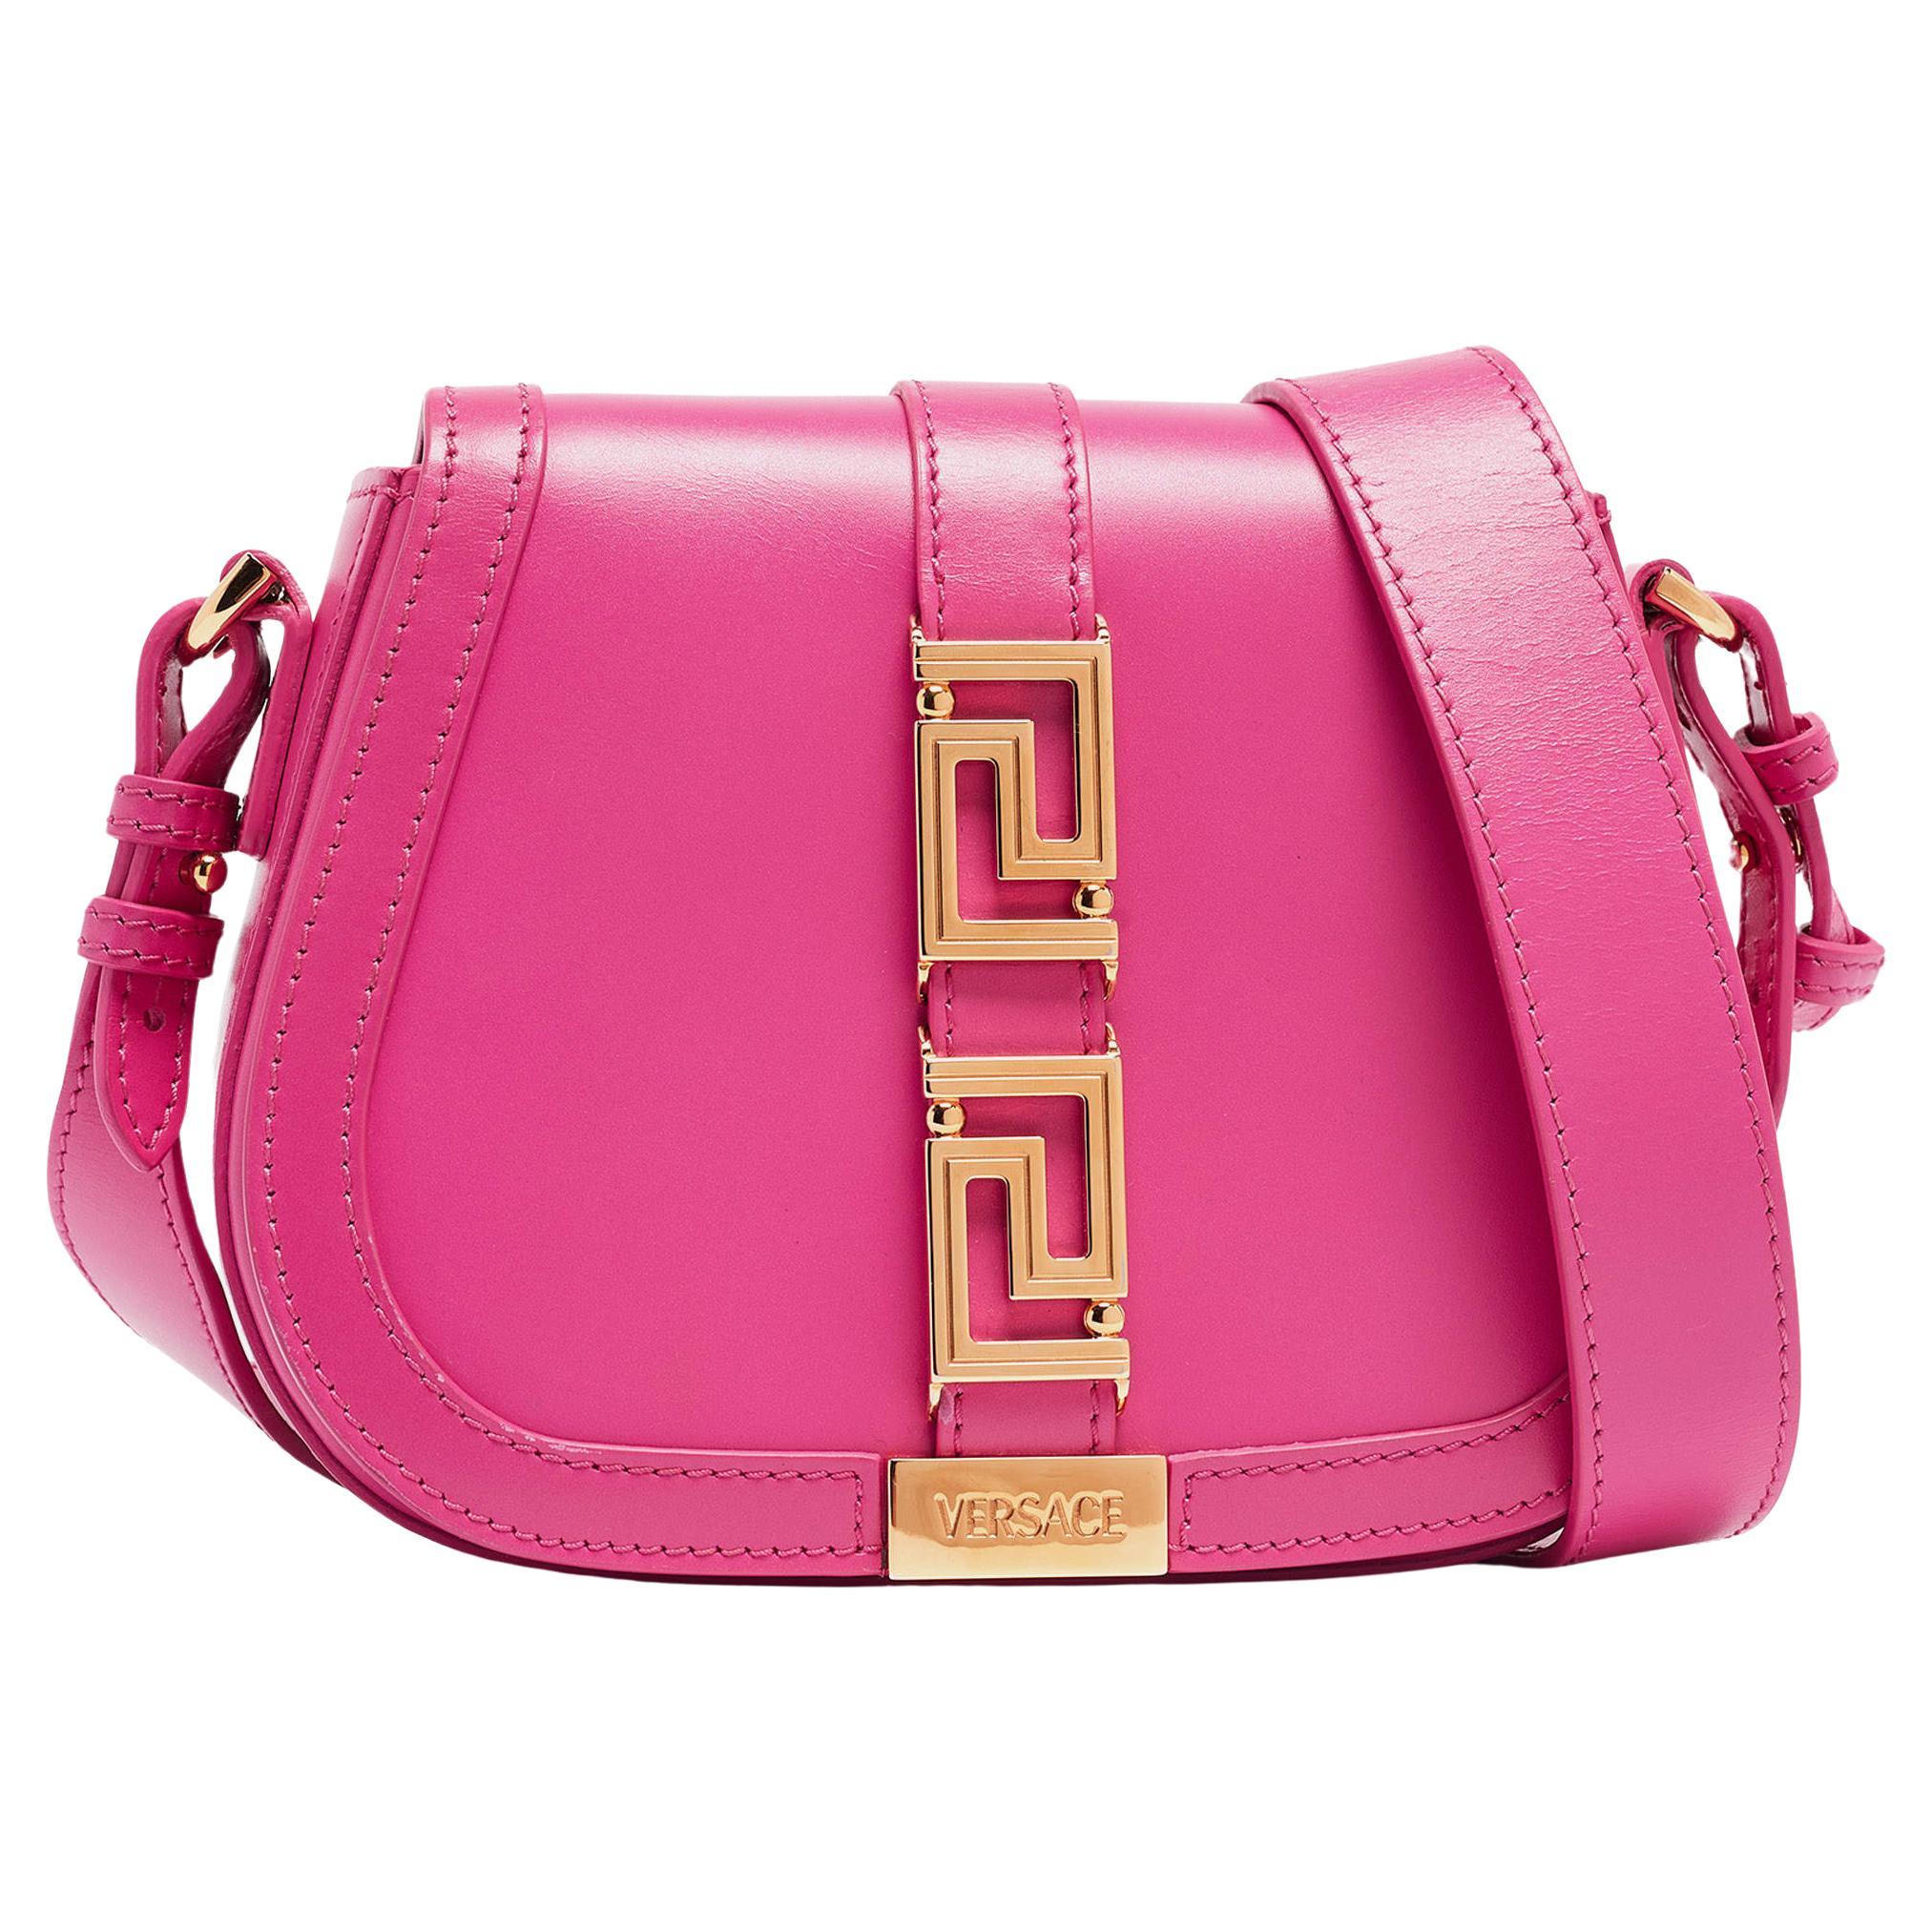 Versace Pink Leather Greca Shoulder Bag For Sale